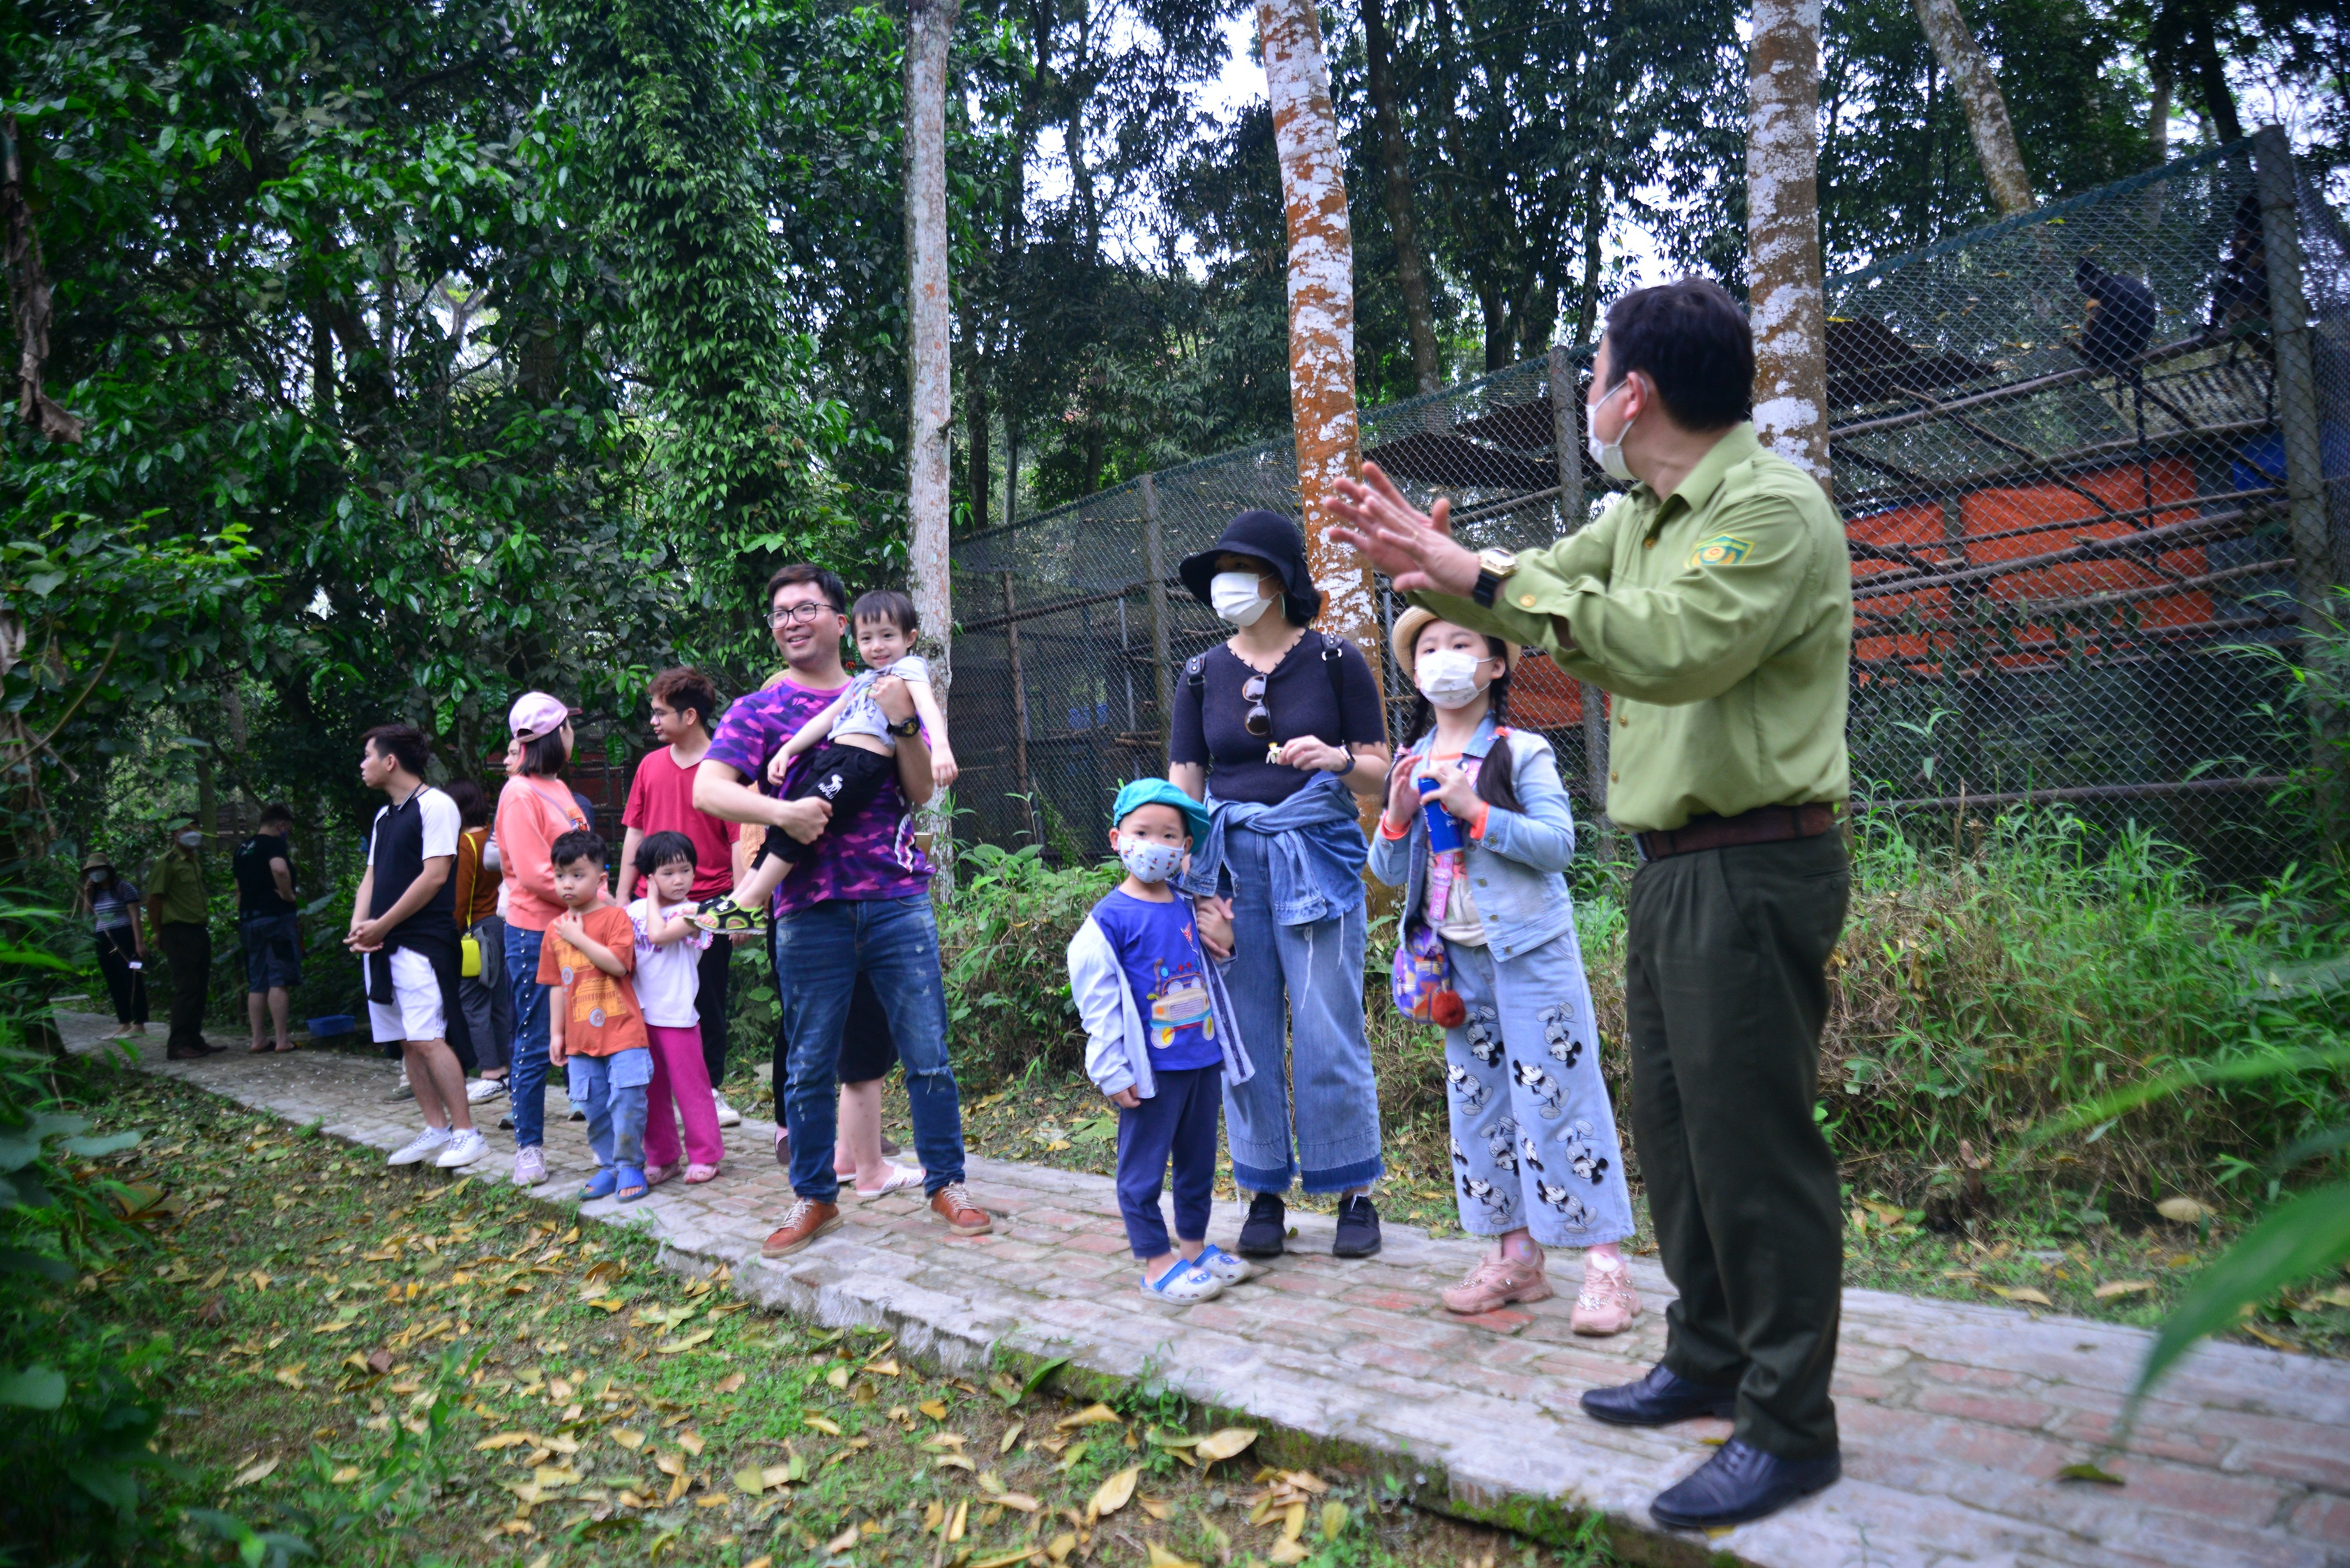 Gia đình MC nghe cán bộ giáo dục của Vườn giới thiệu về Chương trình Cứu hộ Linh trưởng nguy cấp. Ảnh: Trần Văn Bảy.